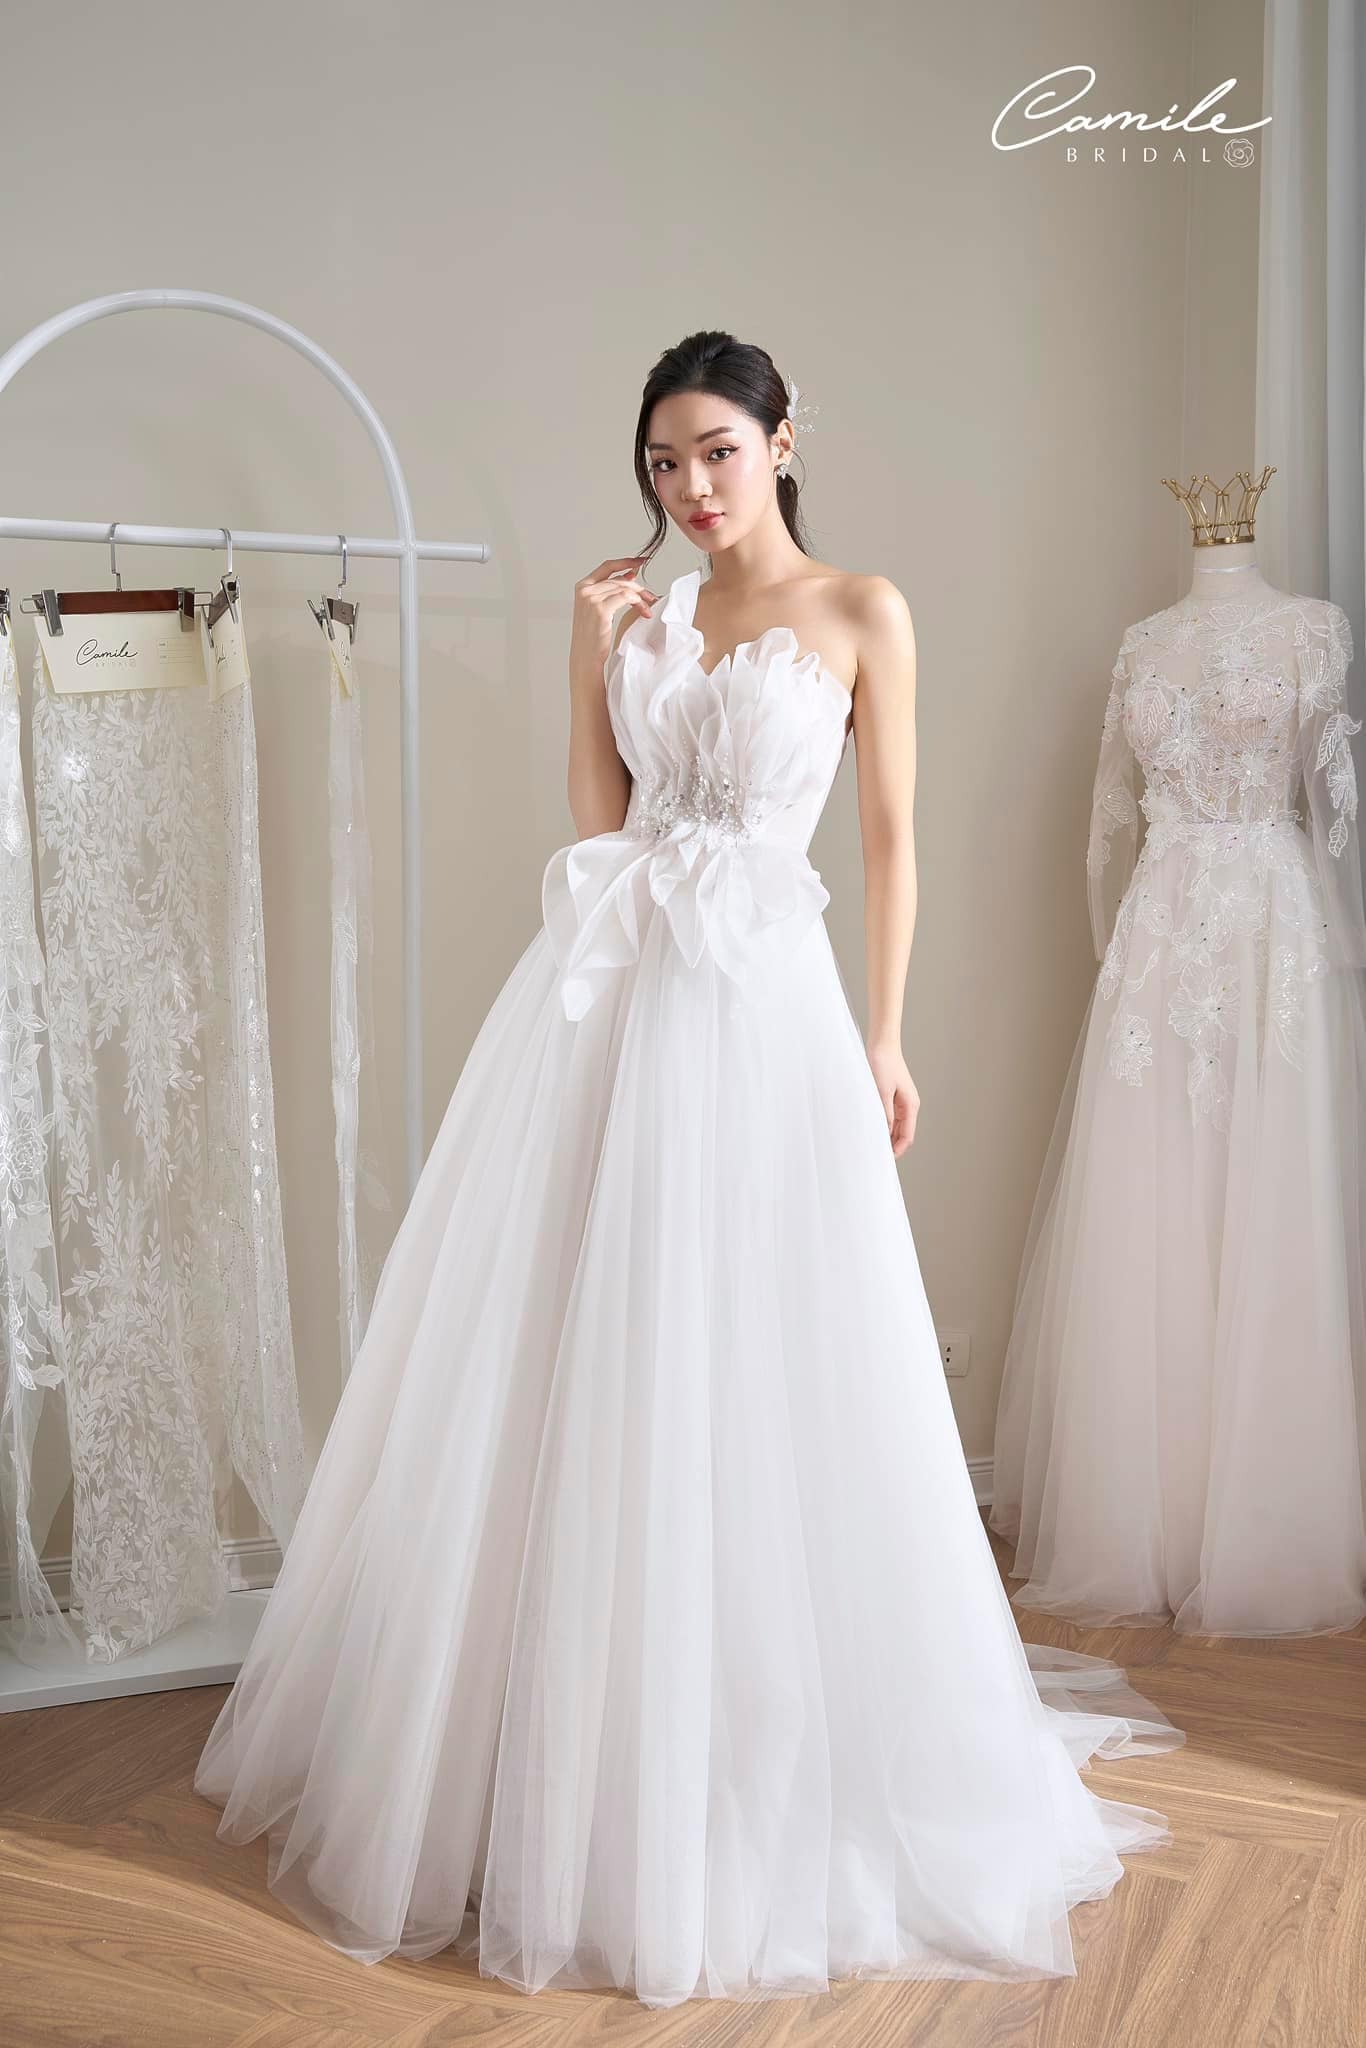 Minh Hằng bị bắt gặp đi thử váy cưới ở Hà Nội